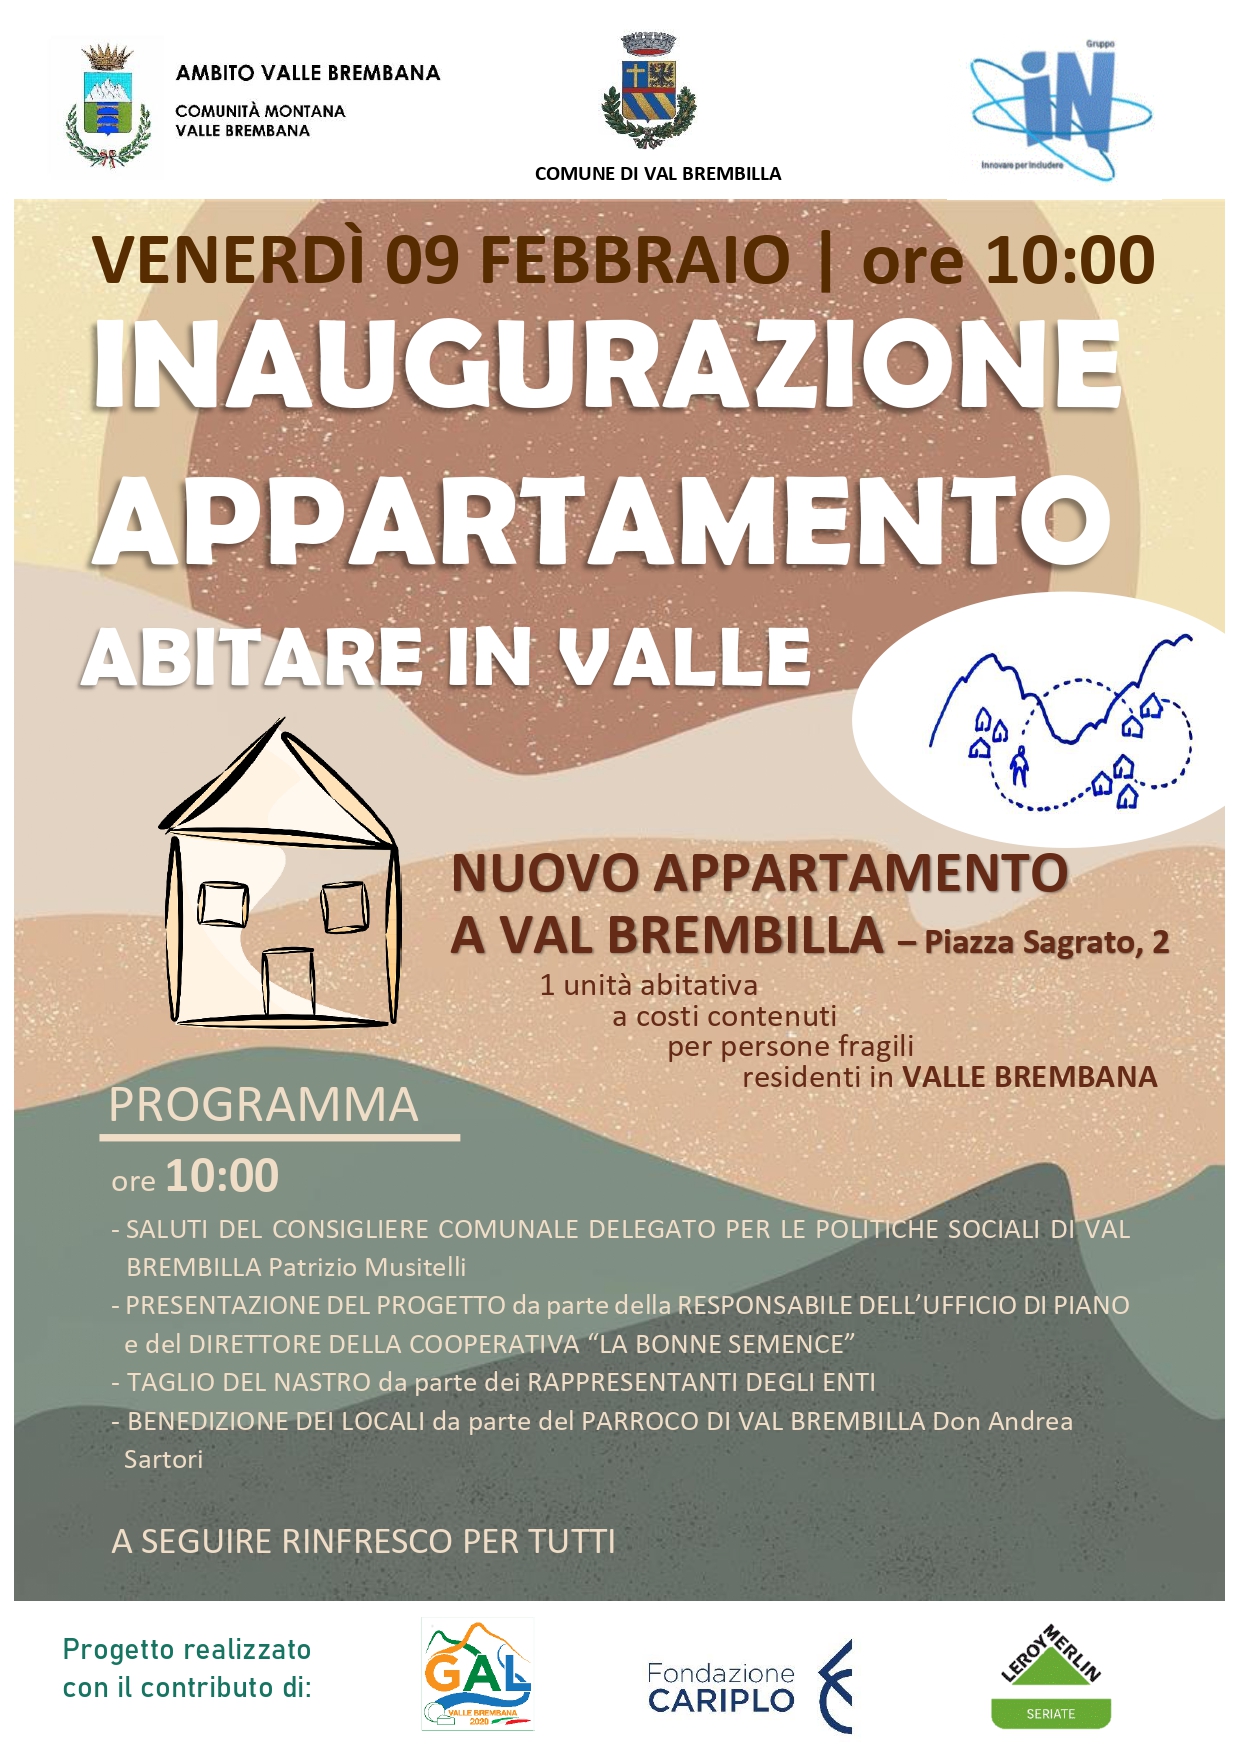 Immagine Inaugurazione Appartamento Val Brembilla - Progetto Abitare in Valle